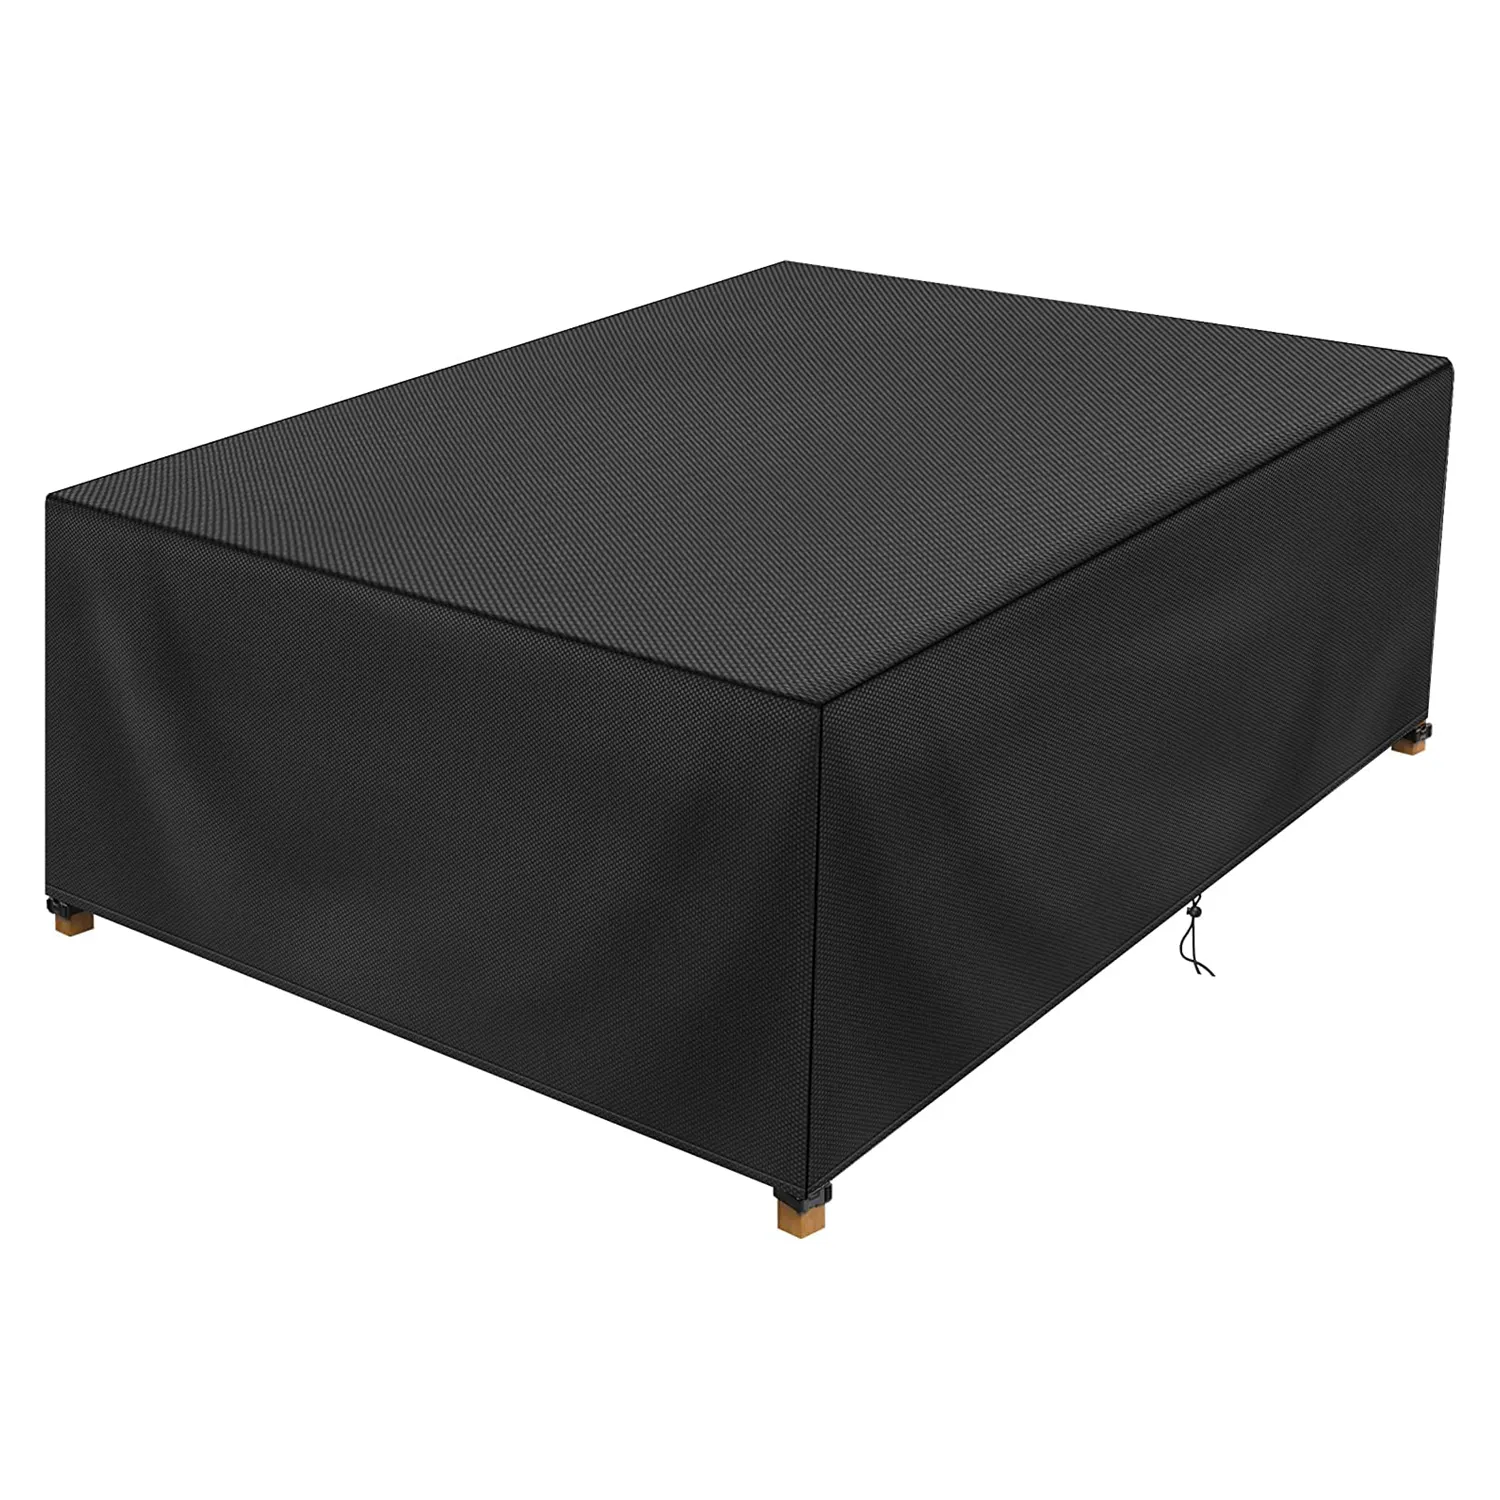 100% водонепроницаемый уличный чехол для стола прямоугольный черный патио мебель для стола для пикника журнальные столы стулья и диваны